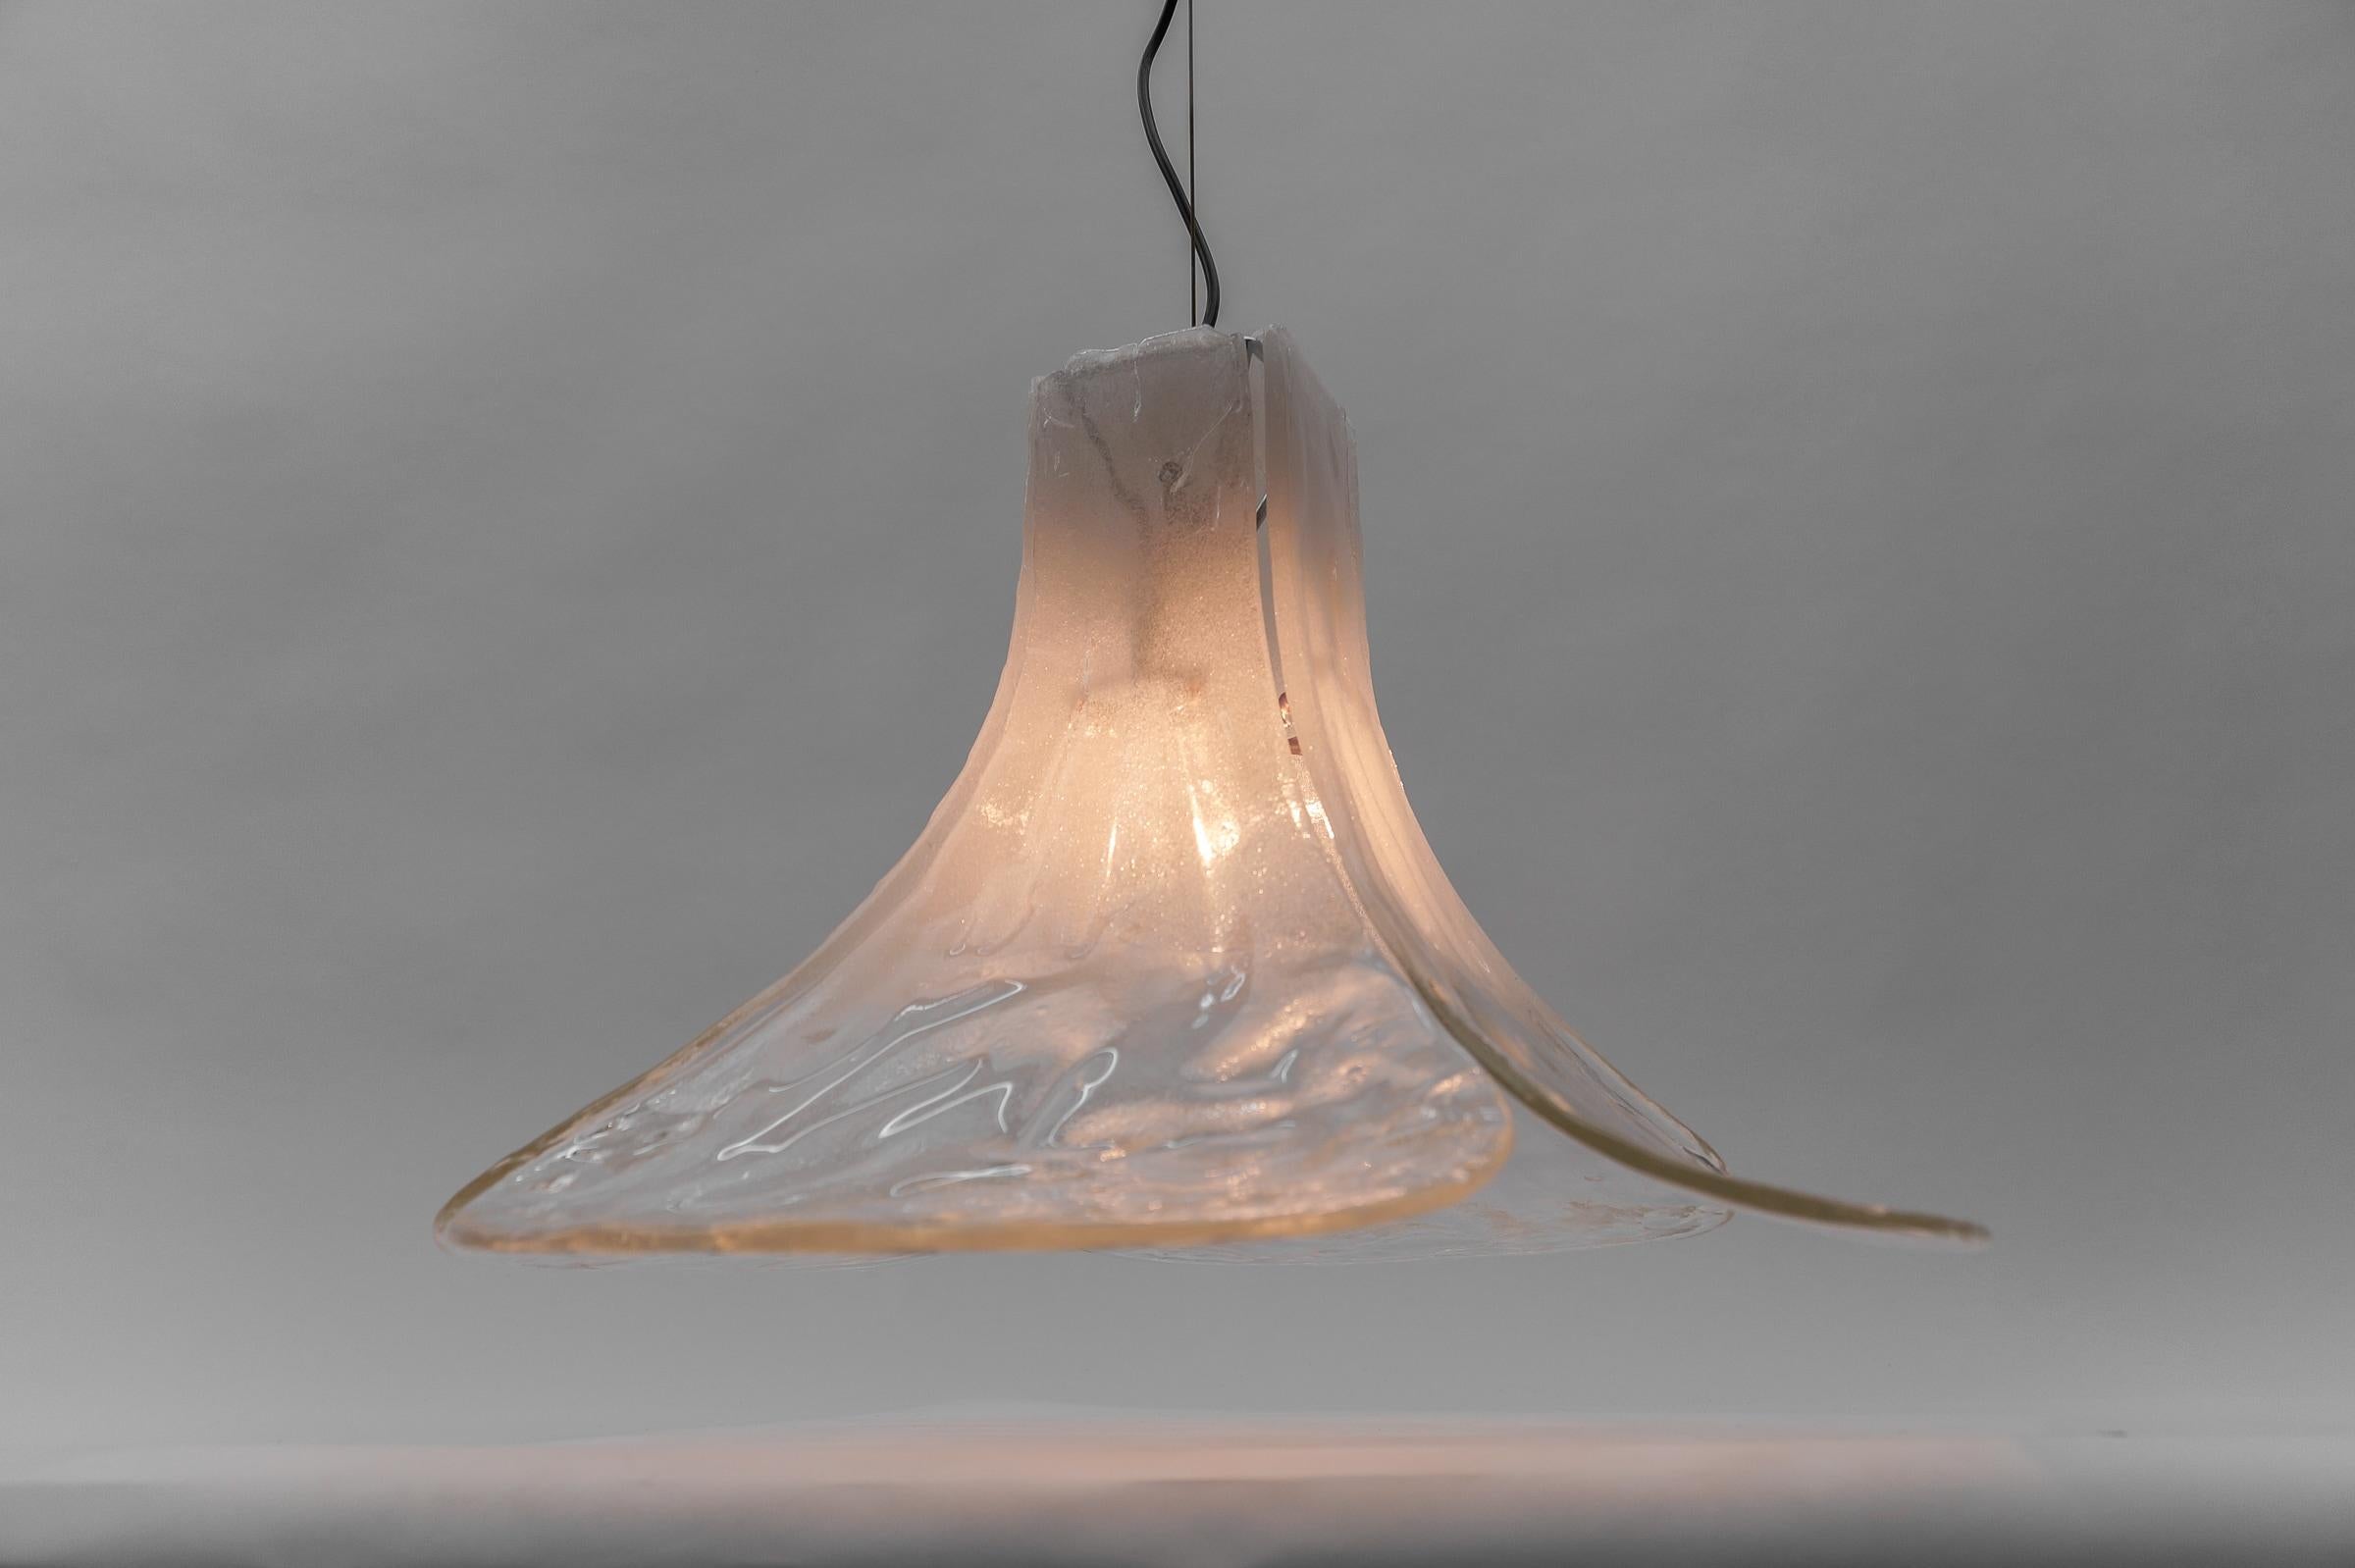 German White Mazzega Pendant Lamp by Carlo Nason for J.T. Kalmar in Murano Glass, 1970s For Sale